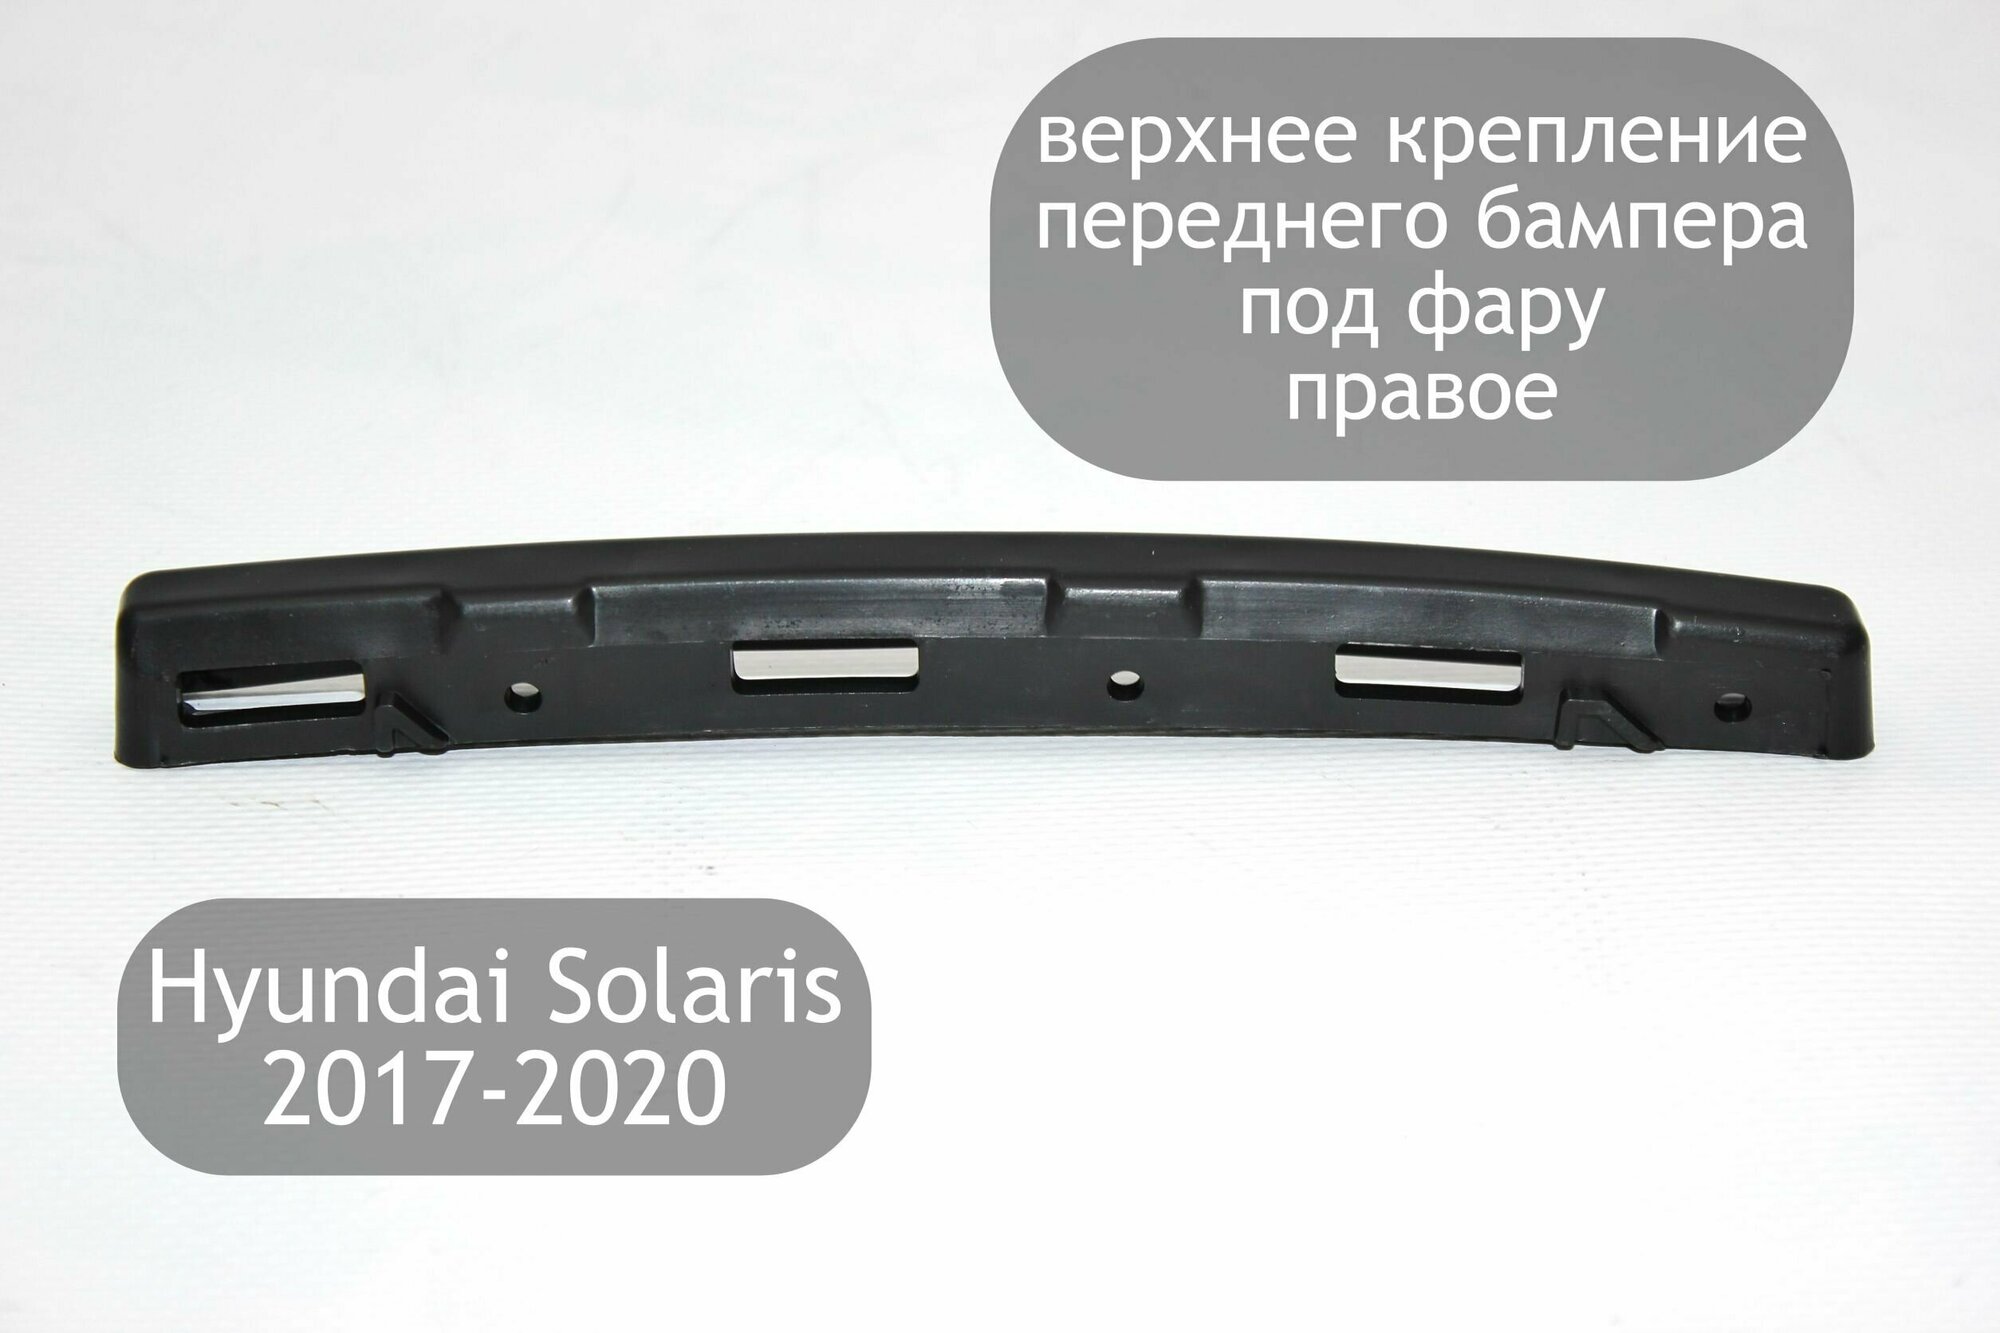 Верхнее крепление переднего бампера под фару правое для Hyundai Solaris 2 2017-2020 (дорестайлинг)